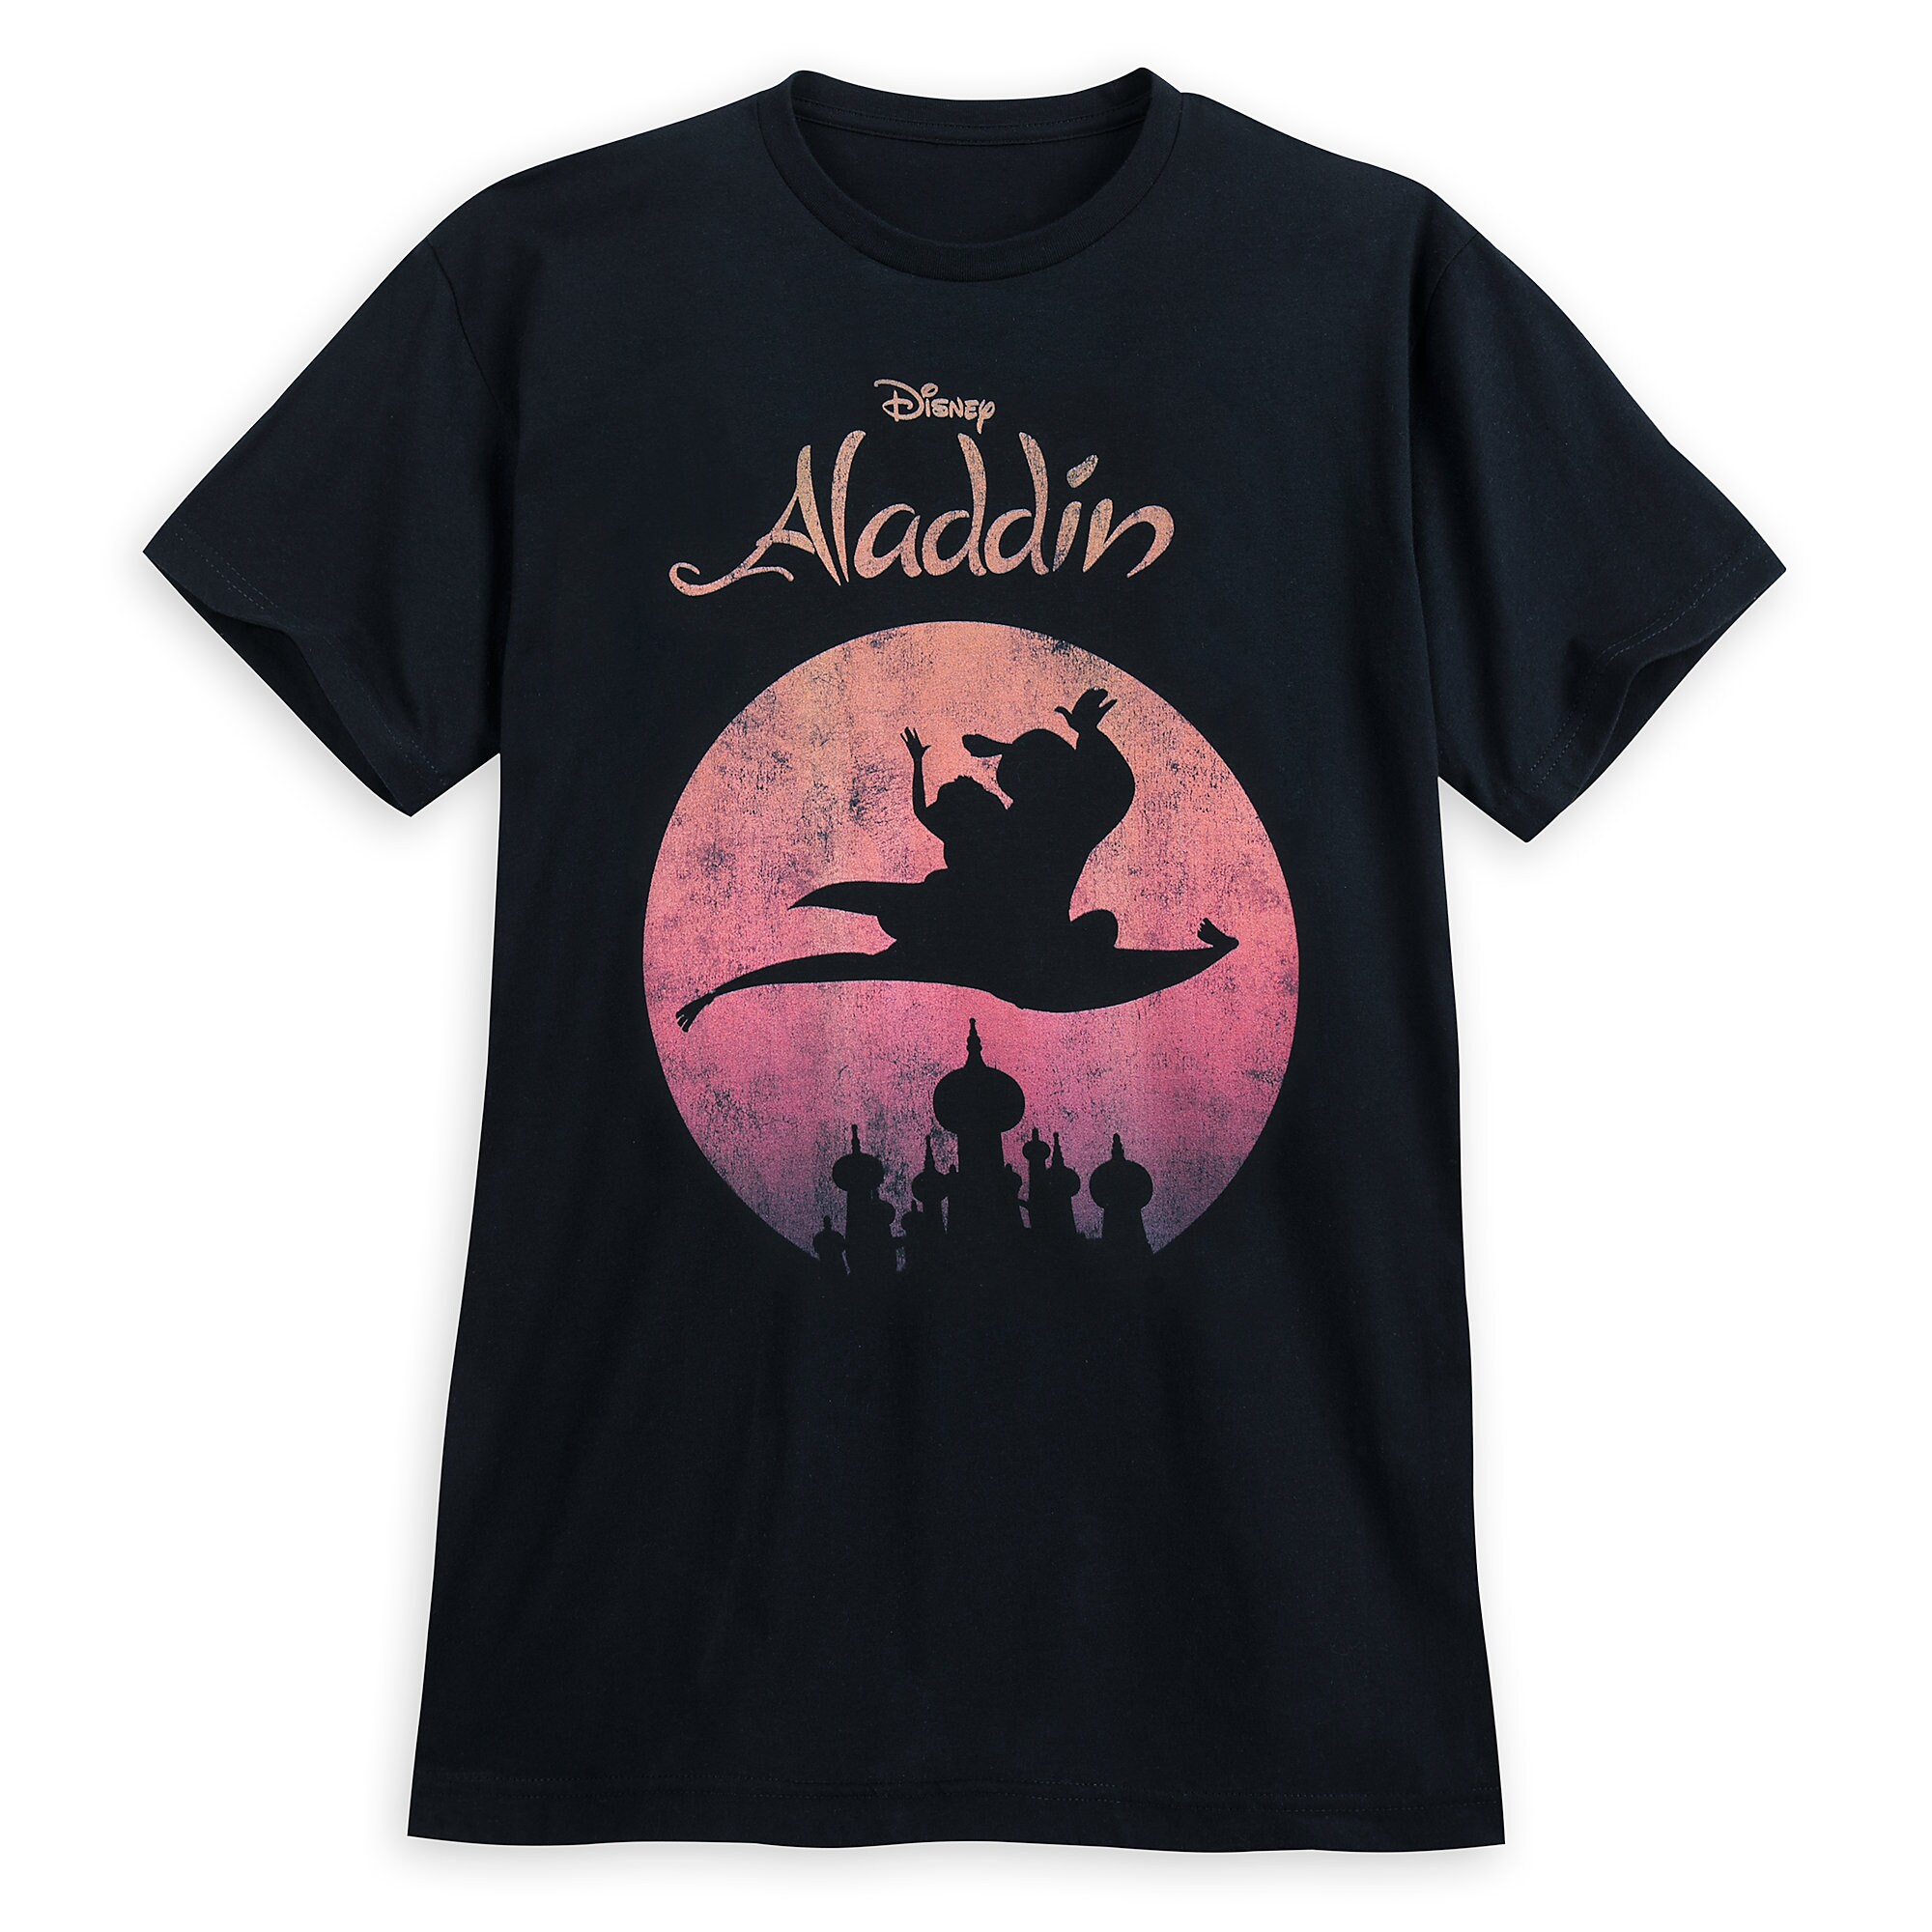 Aladdin Flying Carpet Ride T-Shirt for Men